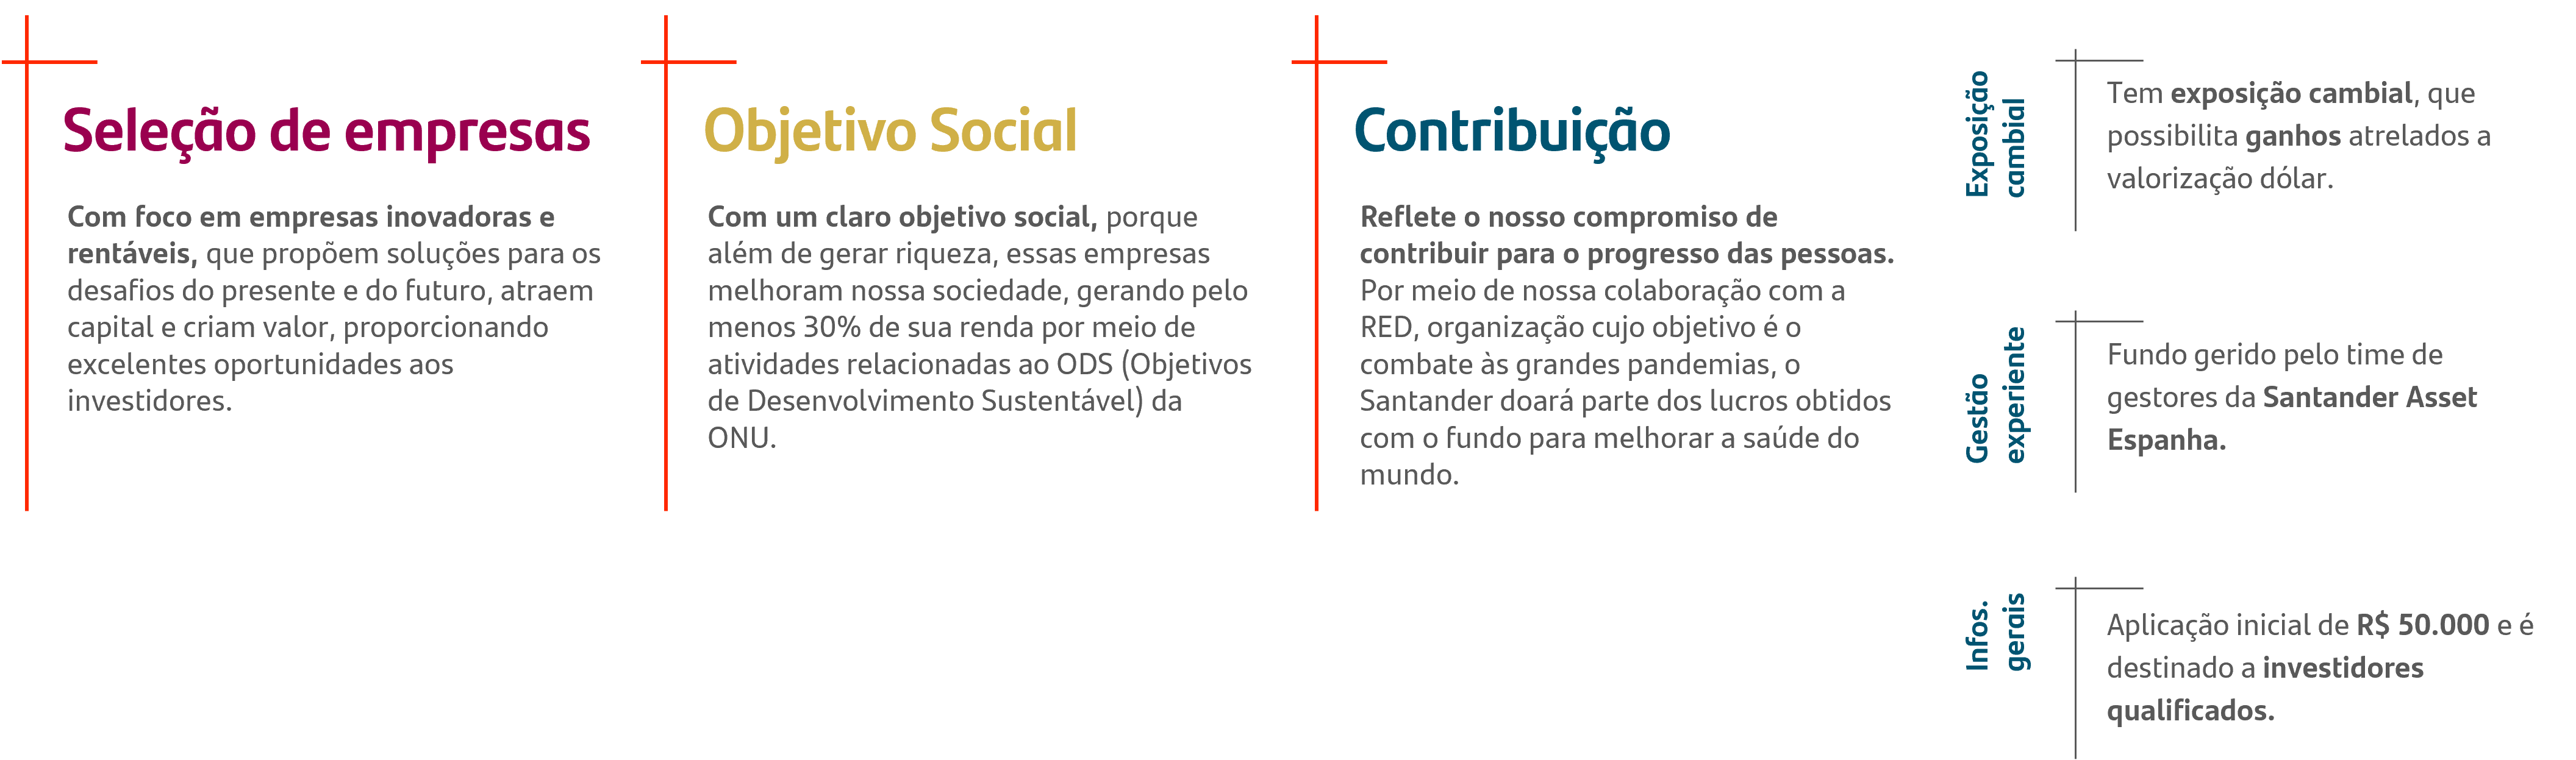 Seleção de Empresas; Objetivo Social; Contribuição.